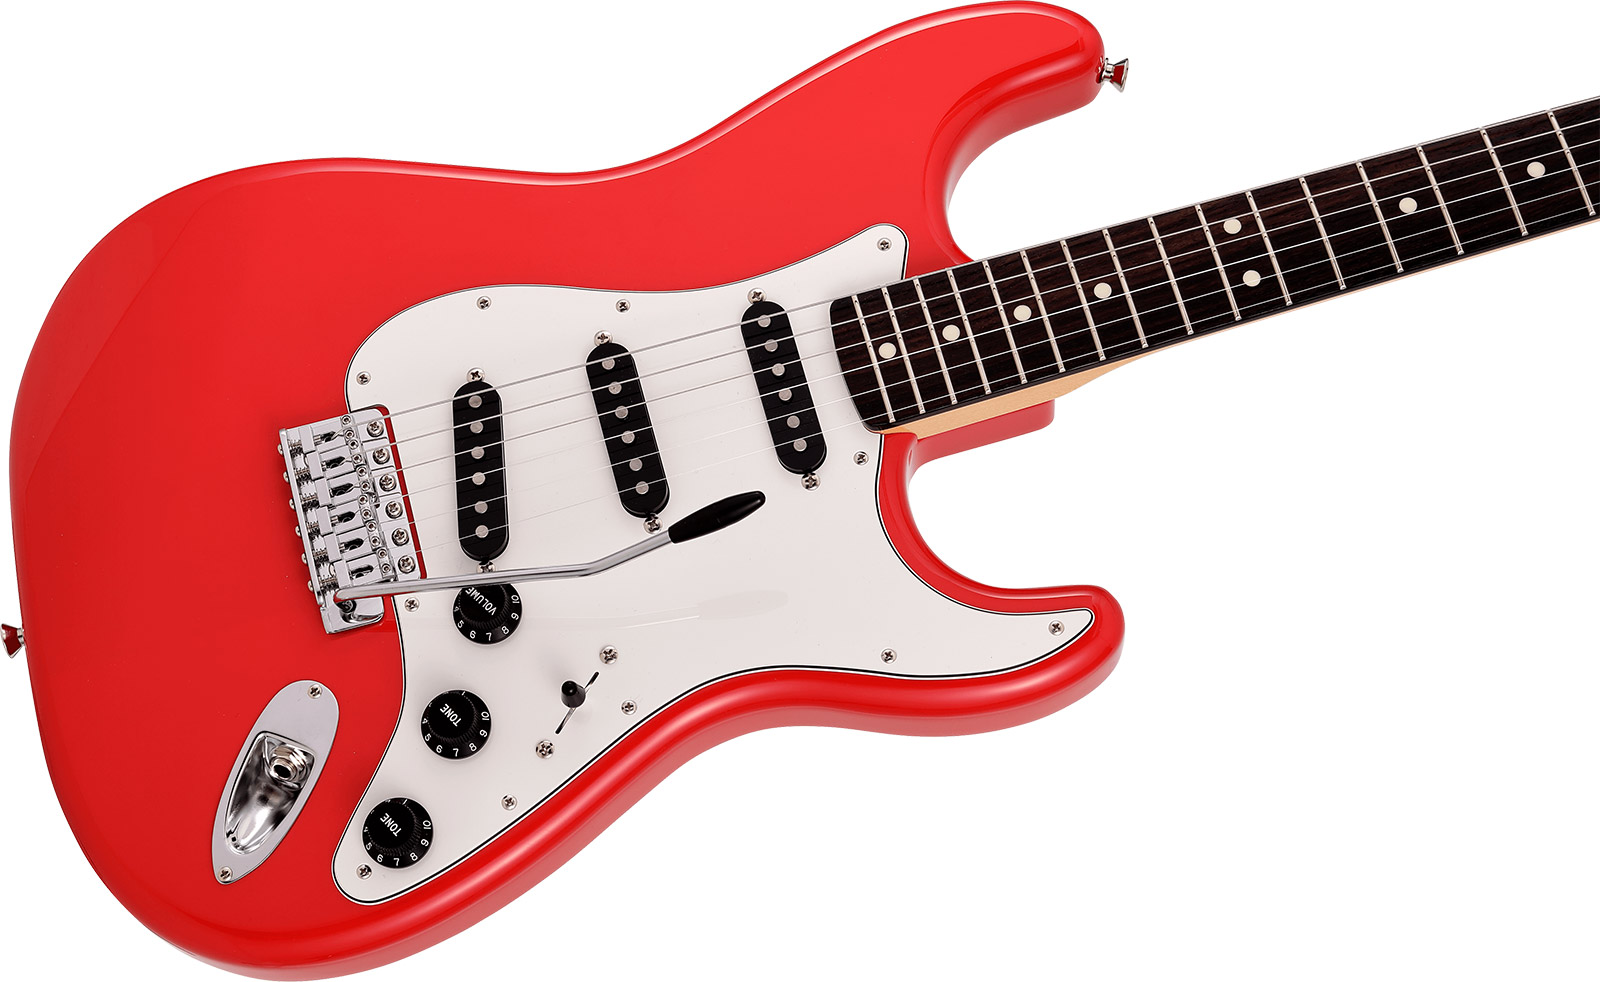 Fender Strat International Color Ltd Jap 3s Trem Rw - Morocco Red - Str shape electric guitar - Variation 2